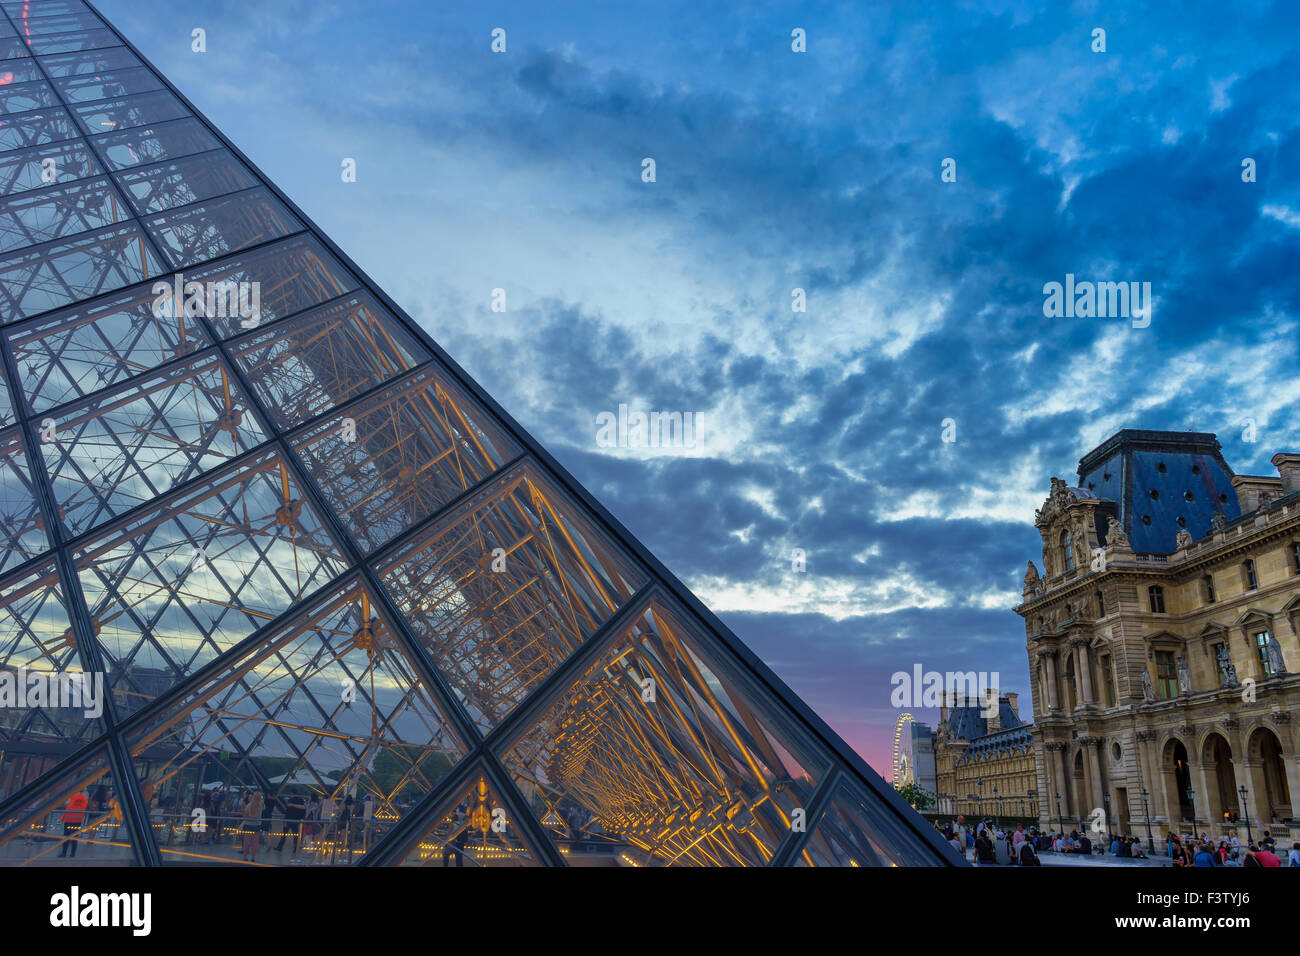 Vue rapprochée de la pyramide du Musée du Louvre pendant le coucher du soleil. Paris, France. Août, 2015. Banque D'Images